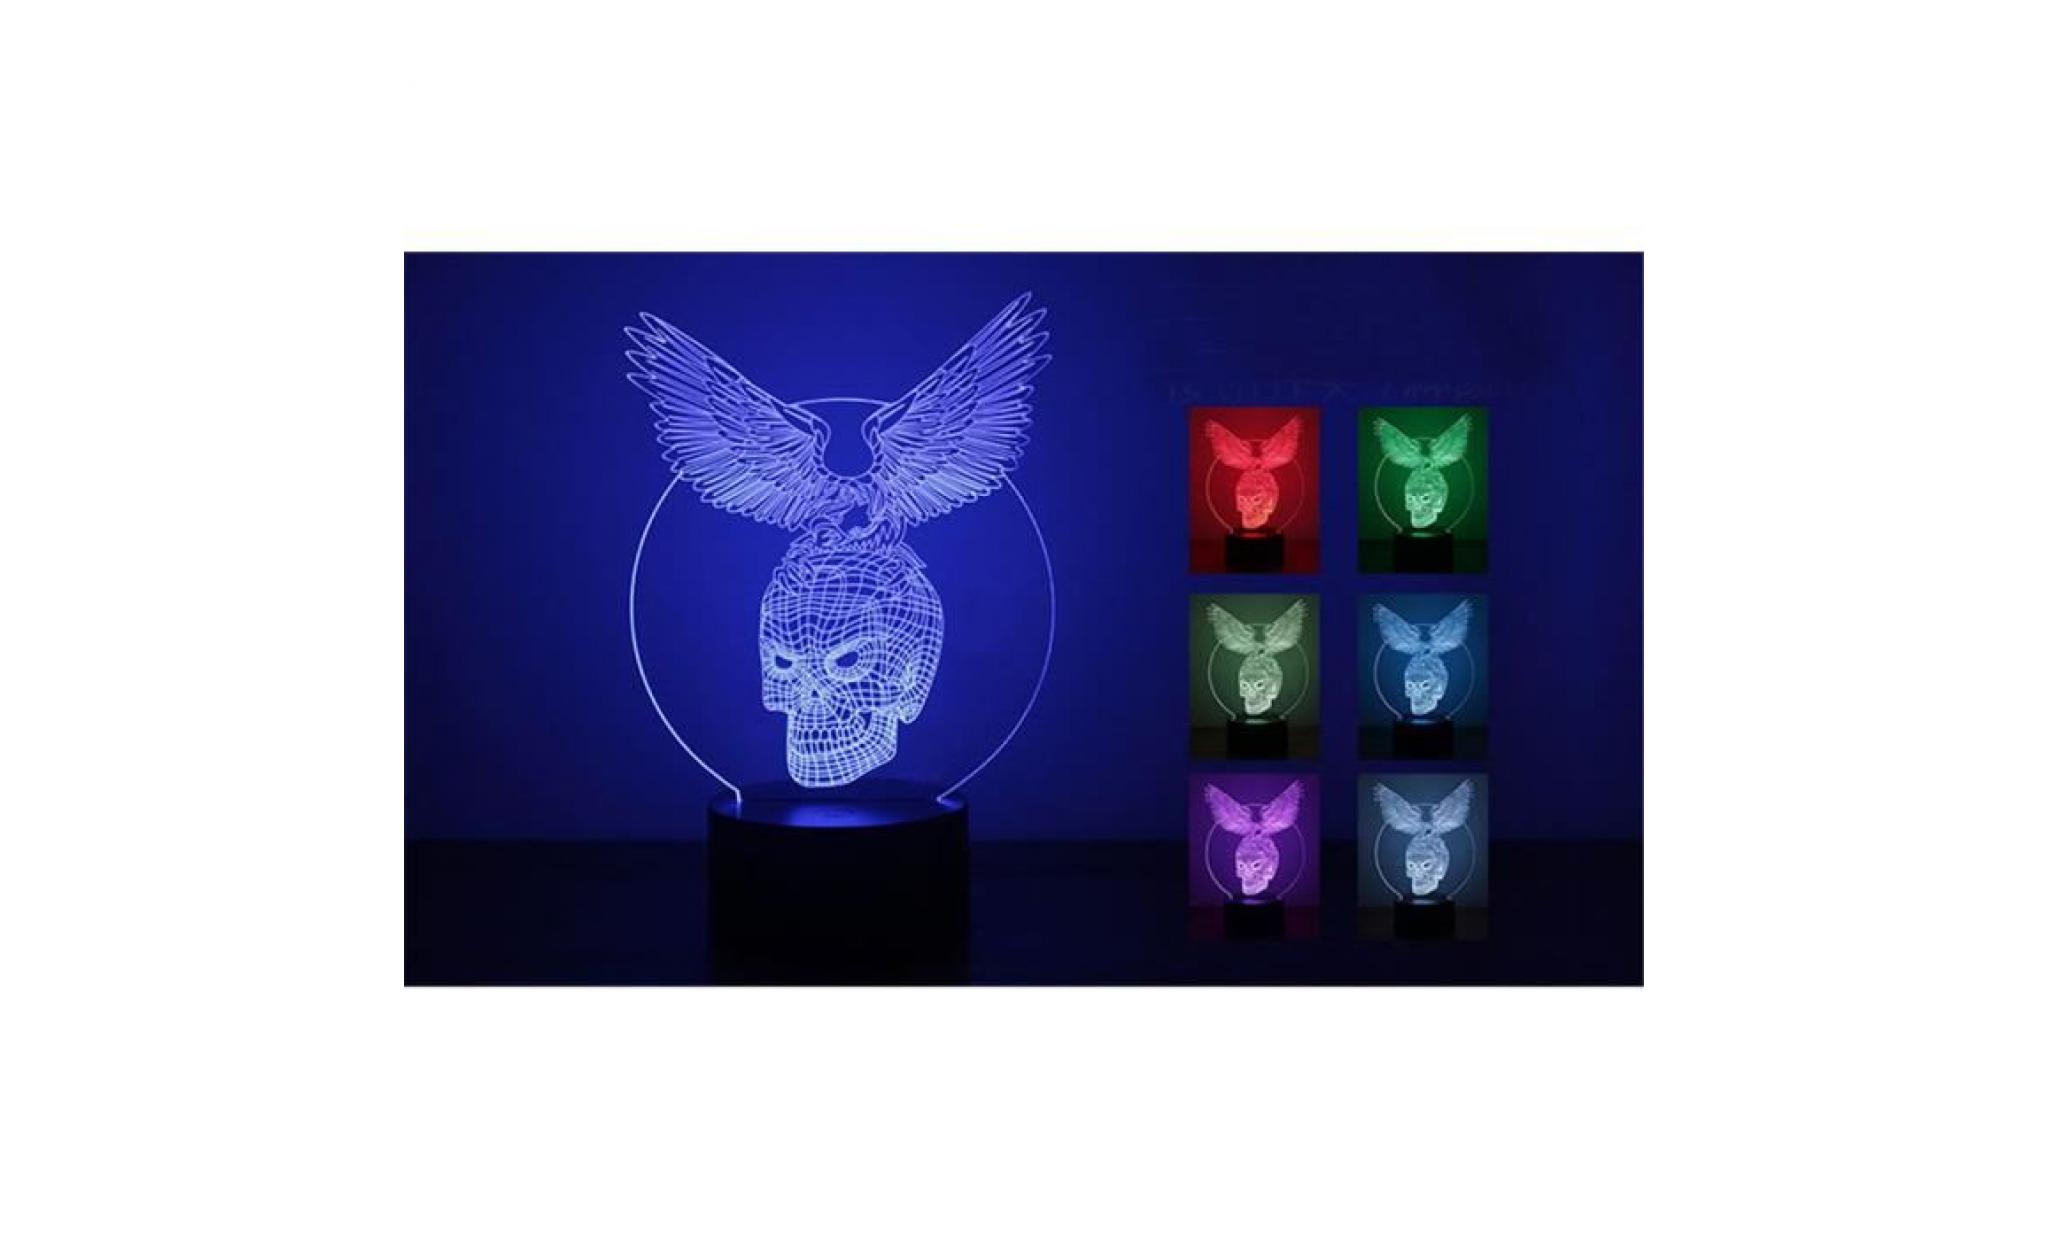 eagle skull 3d led night light lampes illusion optique 3d 7 couleurs pour la maison li331 pas cher